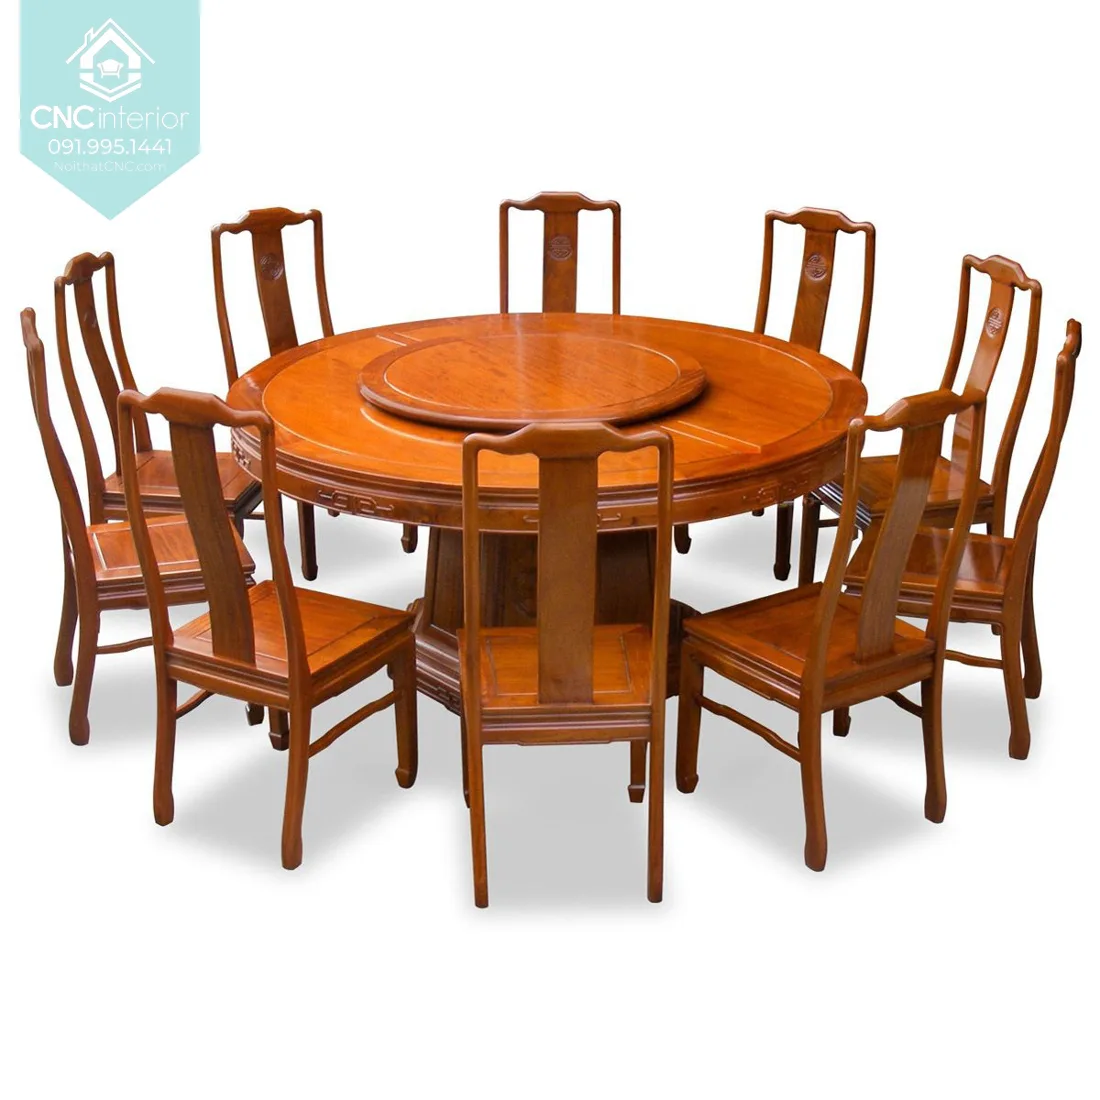 Kích thước bàn ăn tròn rất quan trọng để có thể tối đa hóa không gian ăn uống của bạn. Với sự lựa chọn kích thước phù hợp, bàn ăn tròn sẽ giúp tạo ra không gian ấm cúng và đầy đủ tiện nghi cho gia đình bạn. Khám phá ngay những mẫu bàn ăn tròn đa dạng về kích thước để tạo ra một căn phòng ăn đẳng cấp cho gia đình bạn.